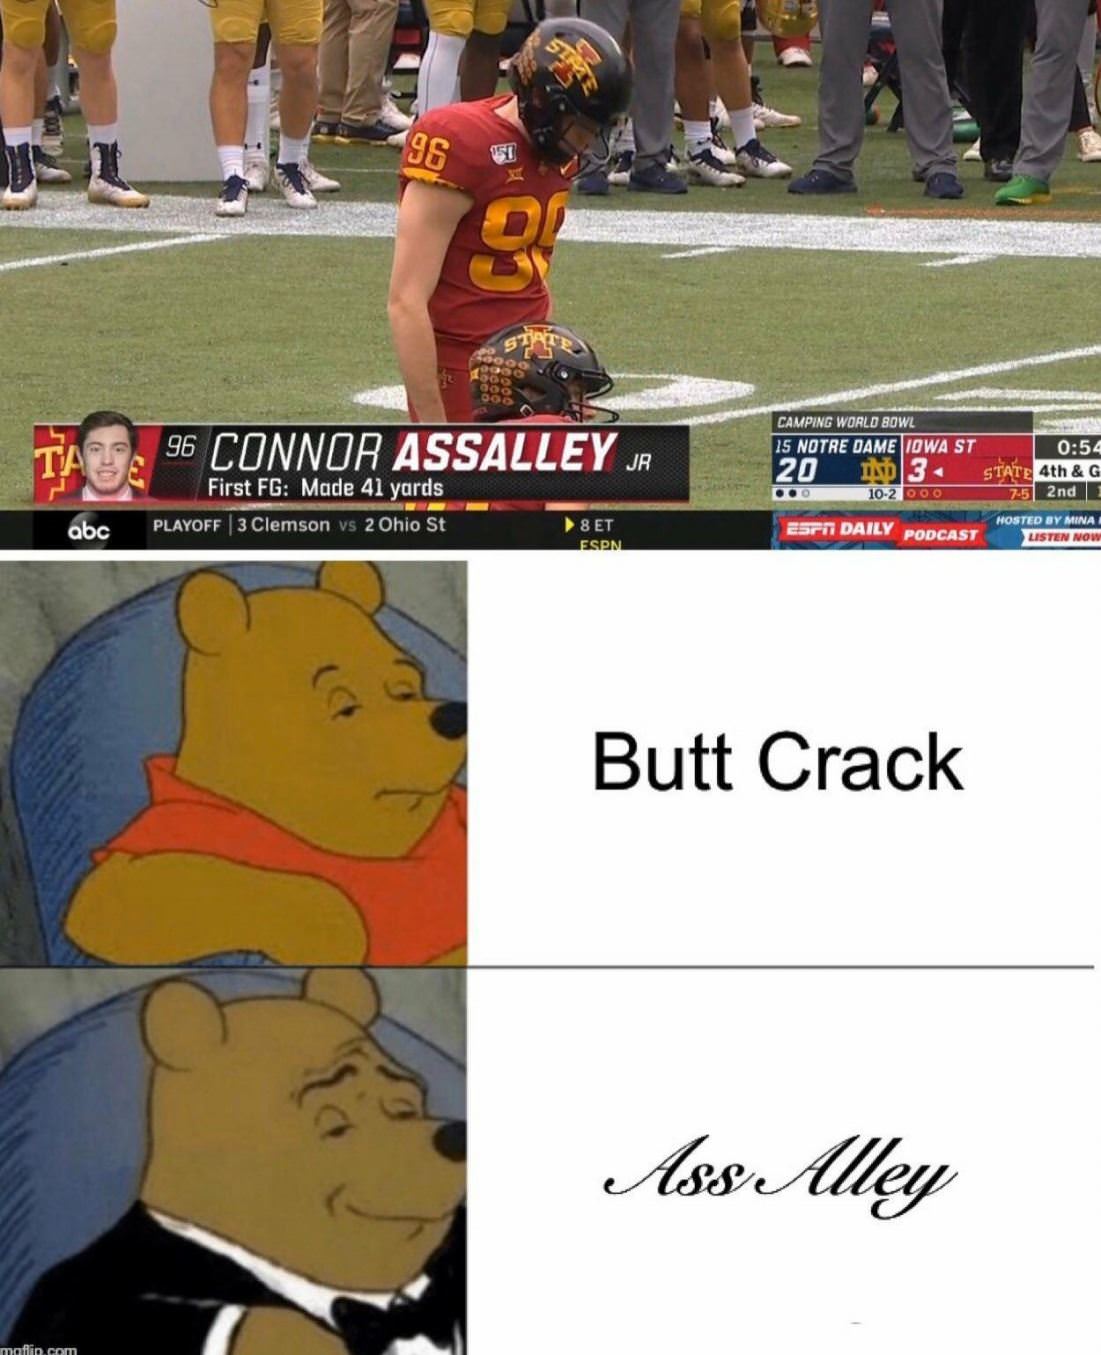 Buttcrack